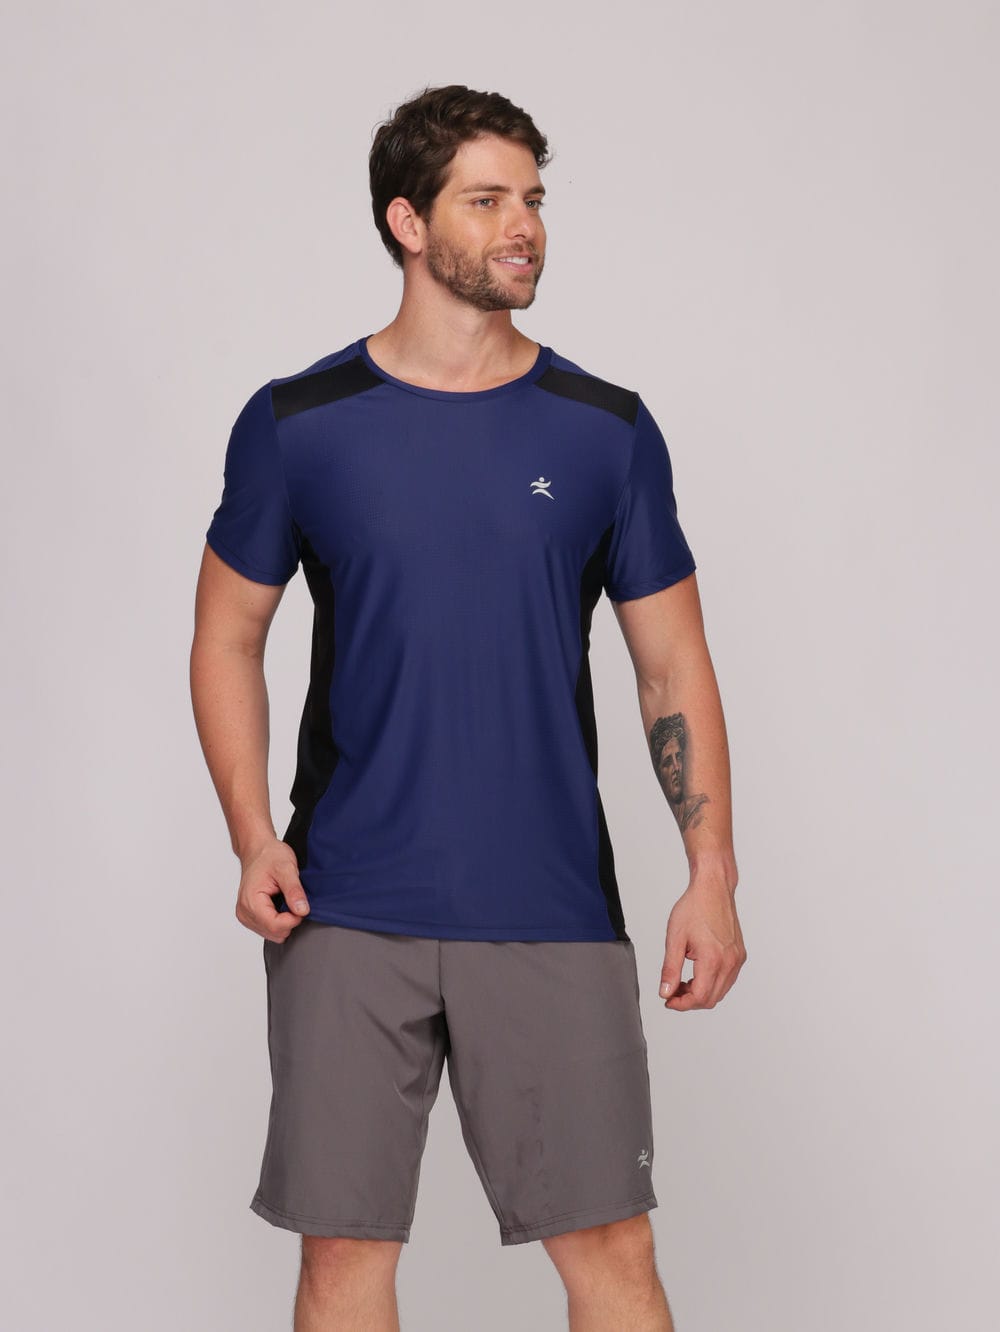 Camiseta Masculina com Recorte Tecido Poliamida com Proteção UV Evita Transpiração - Azul Royal